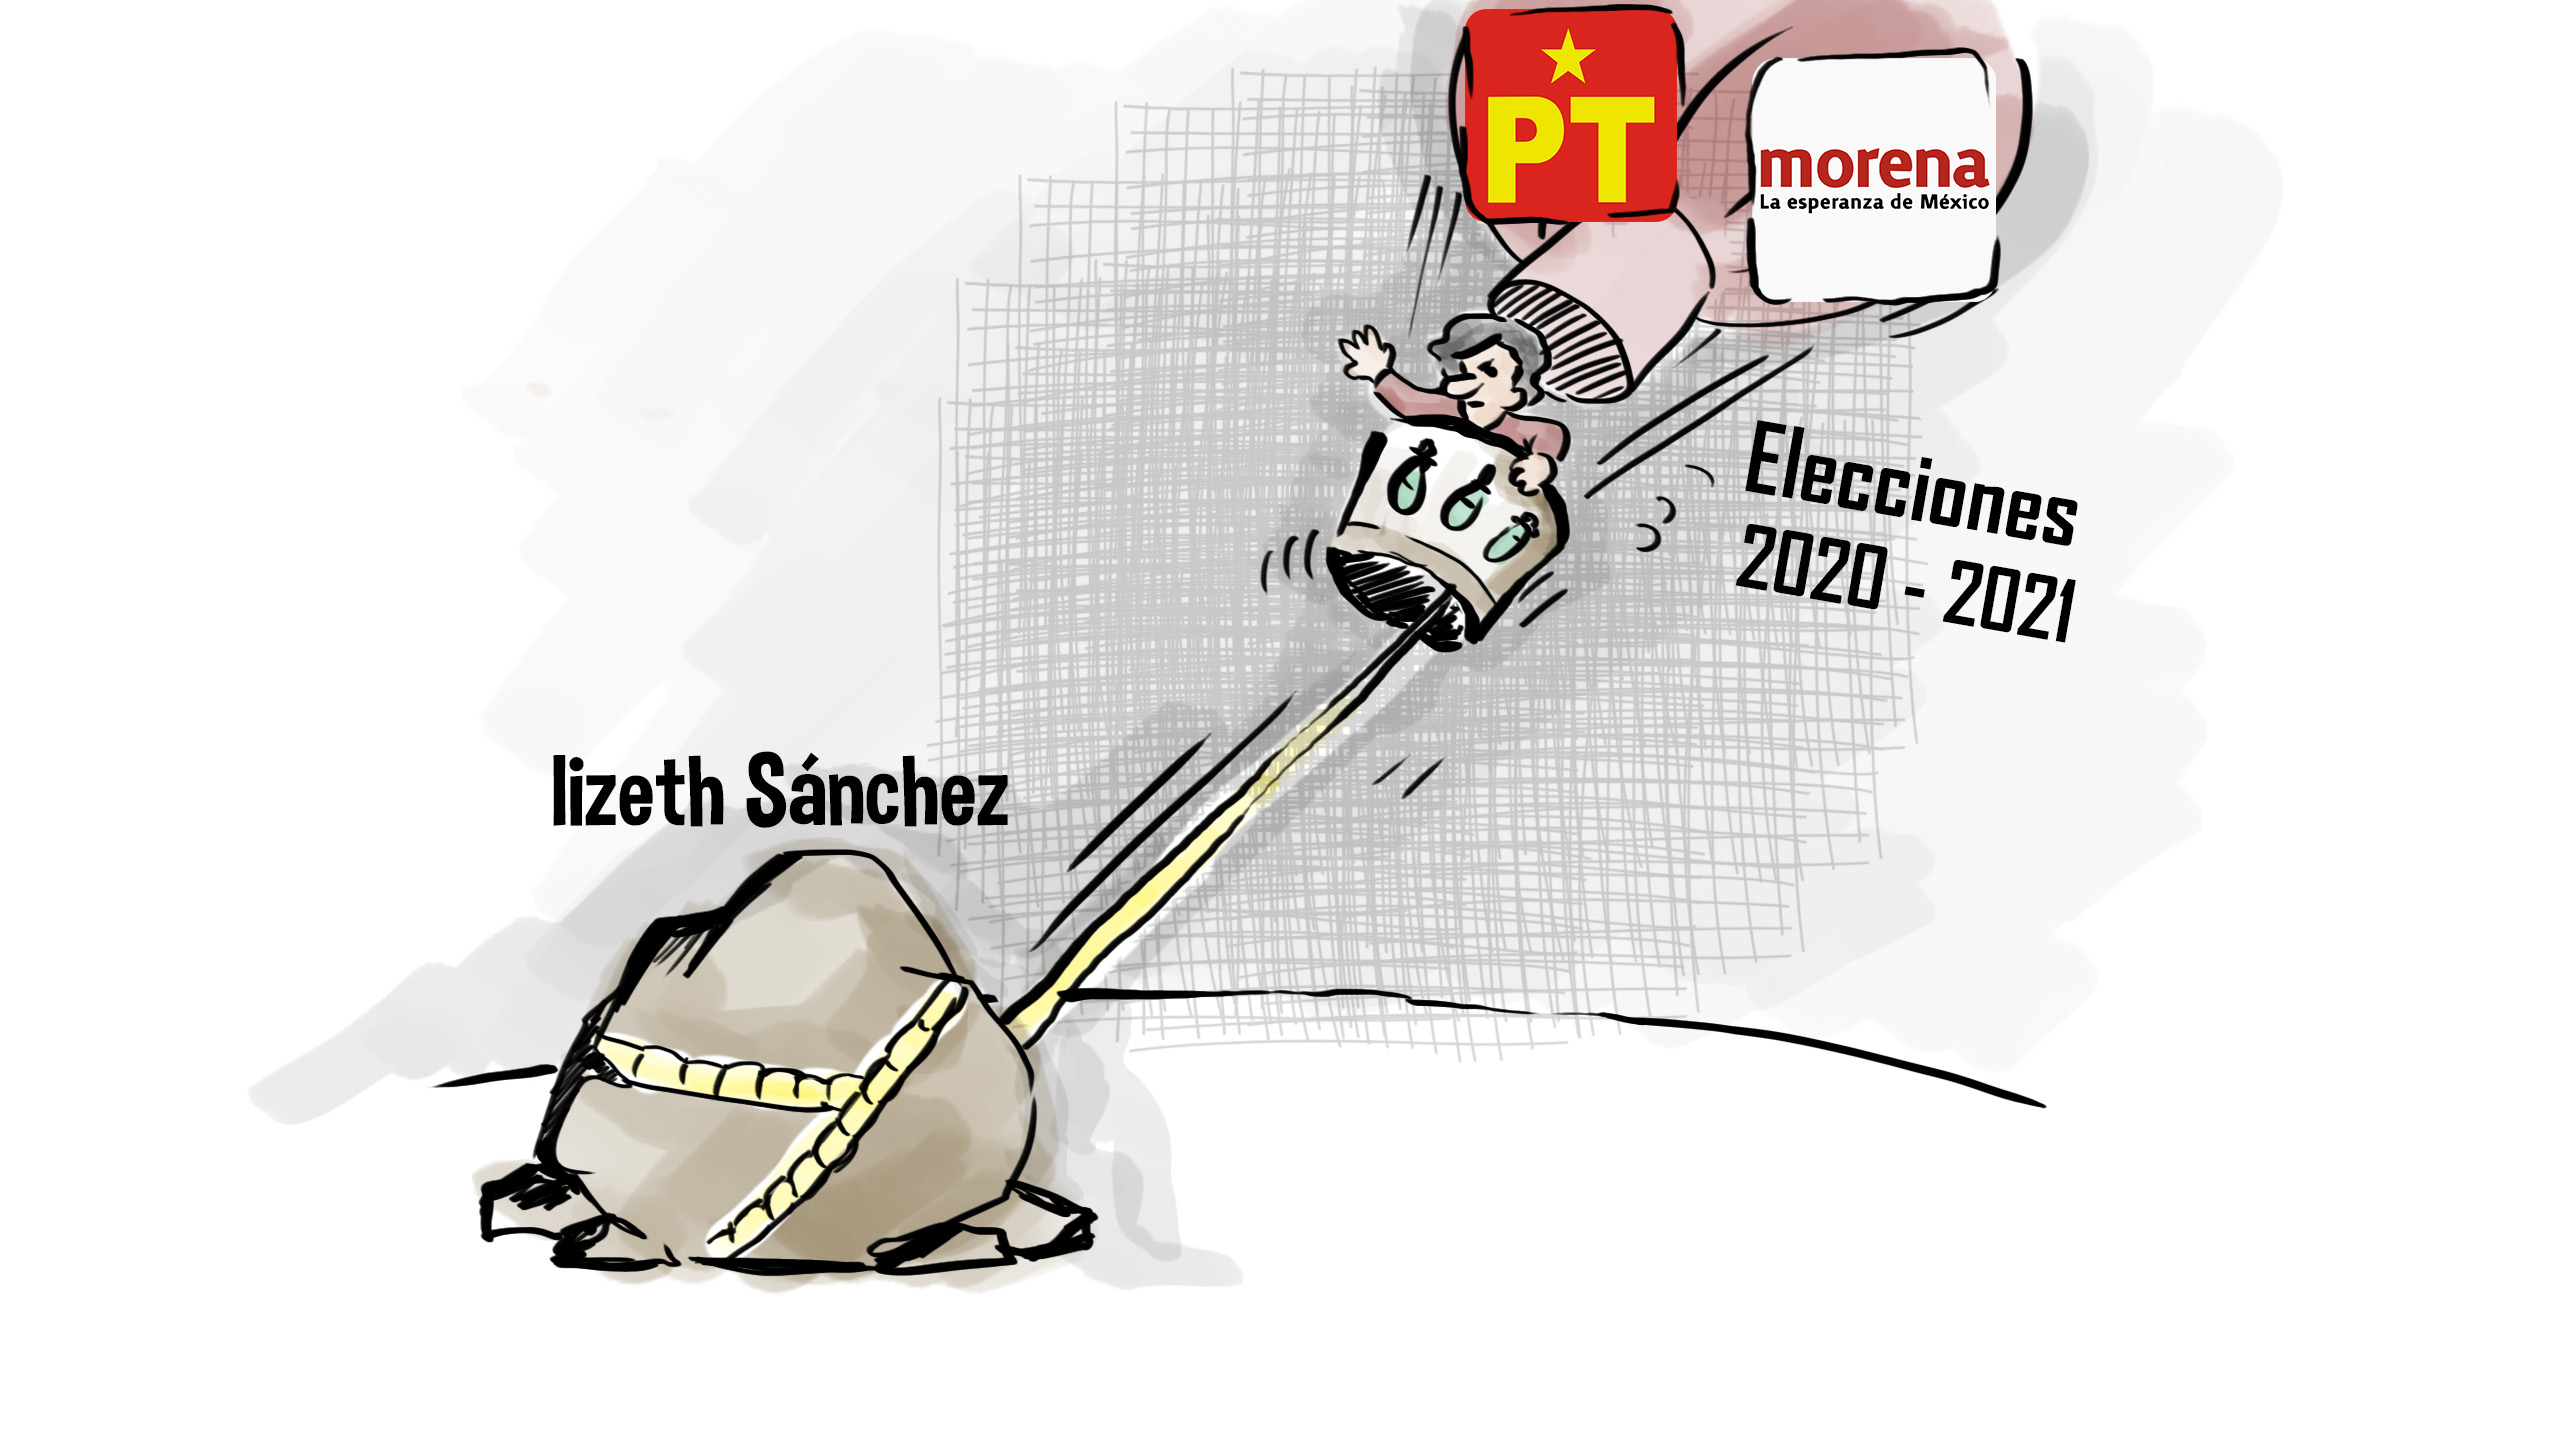 Complicado el triunfo electoral de la alianza Morena-PT (por culpa de Lizeth Sánchez)